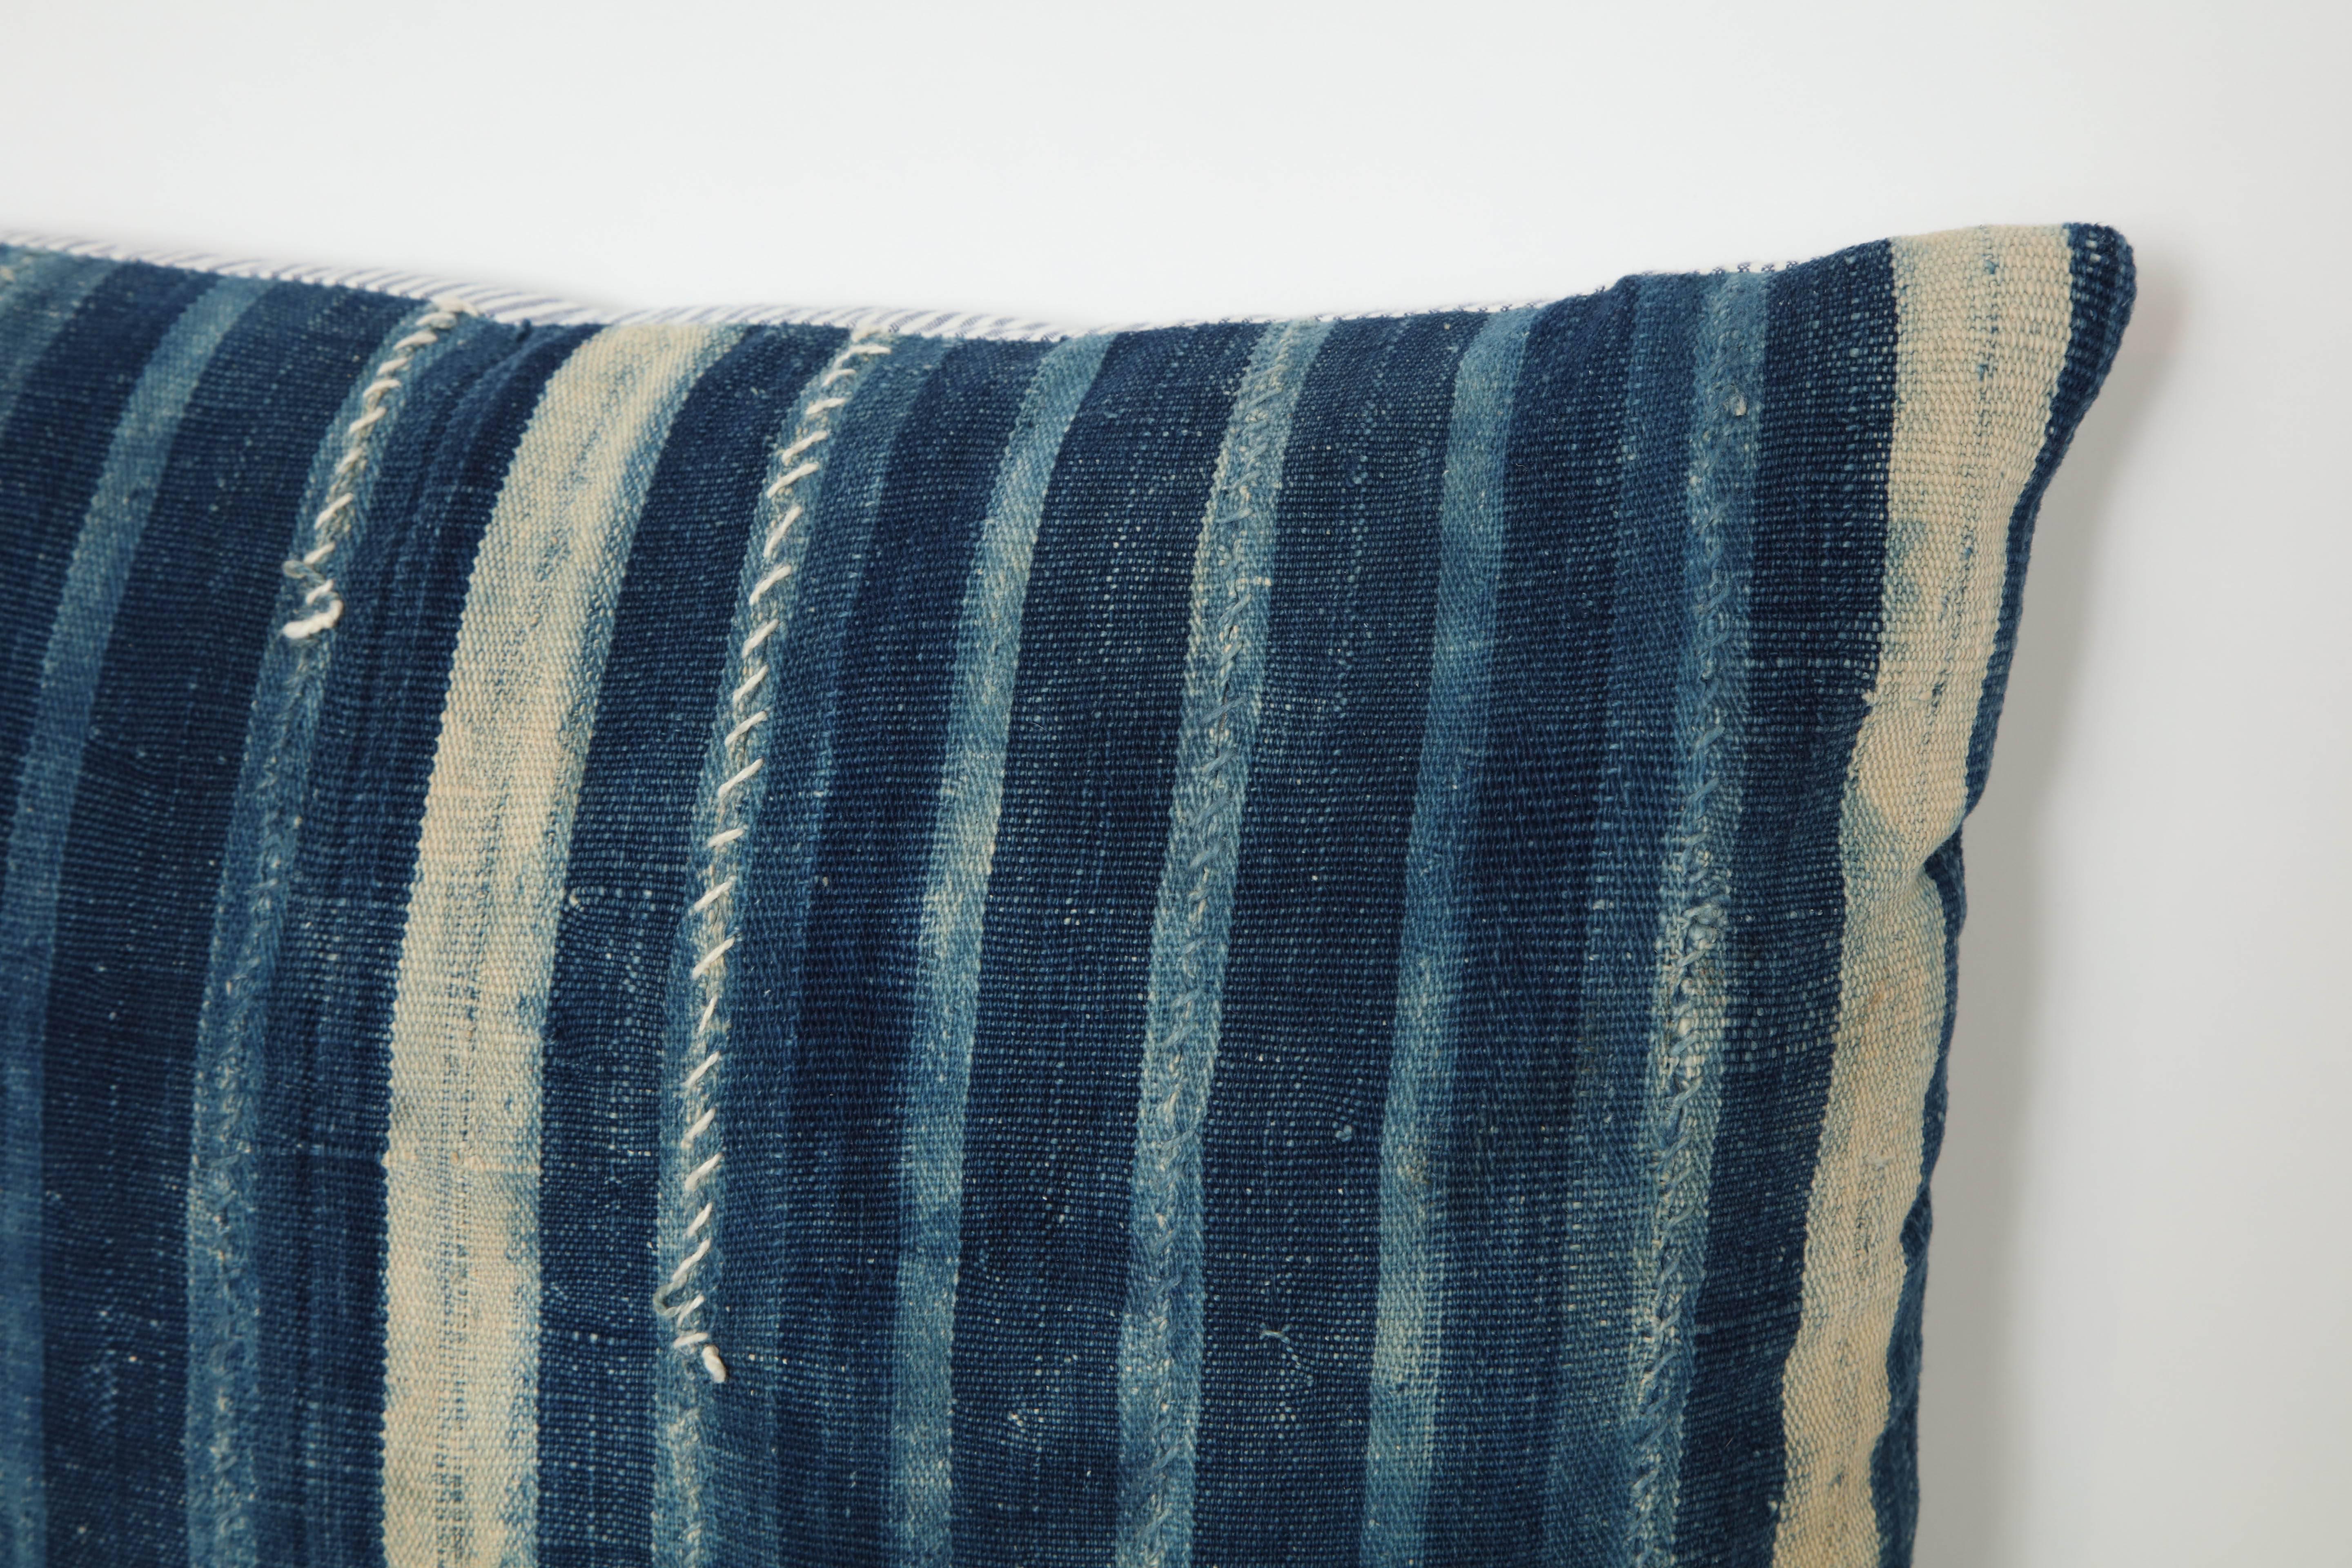 Antique African textile pillow.